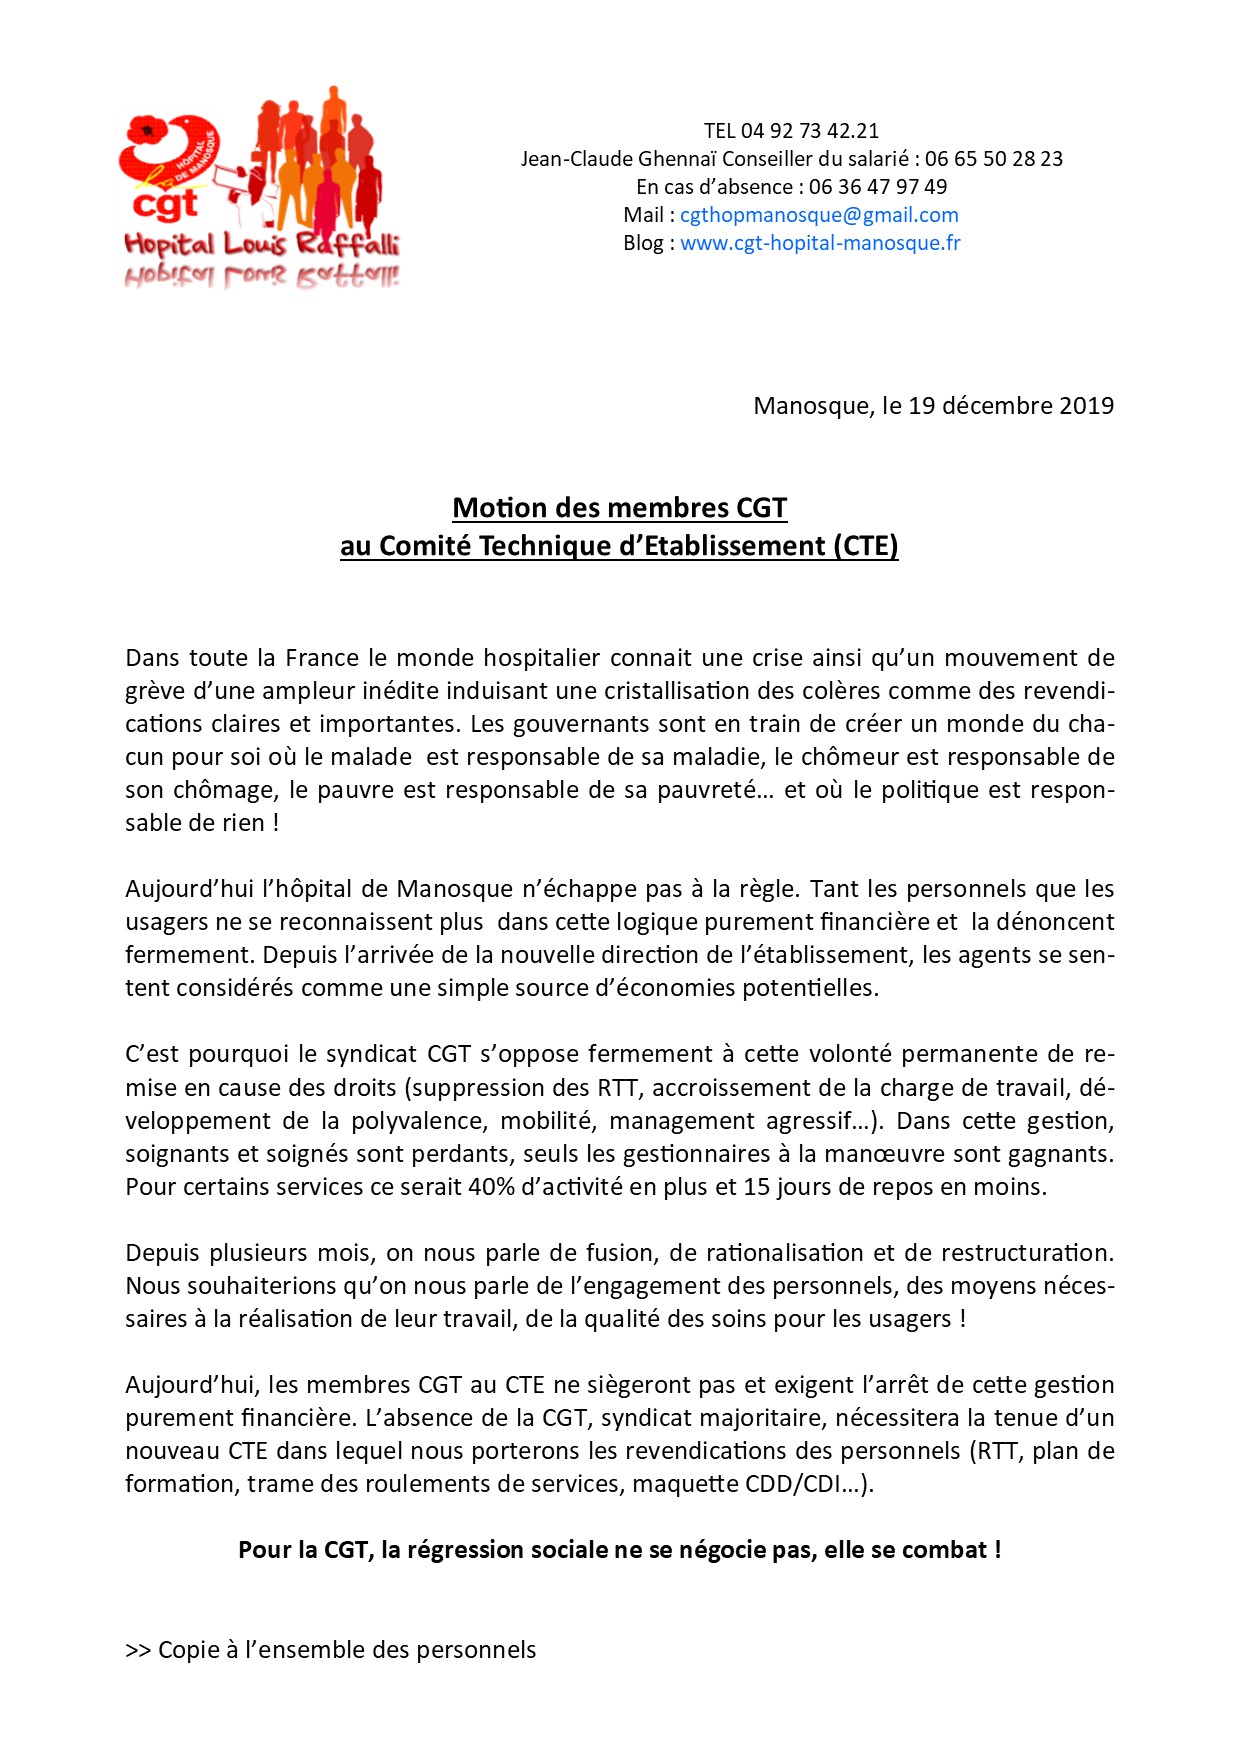 Communiqué CGT CTE du 19 décembre 2019